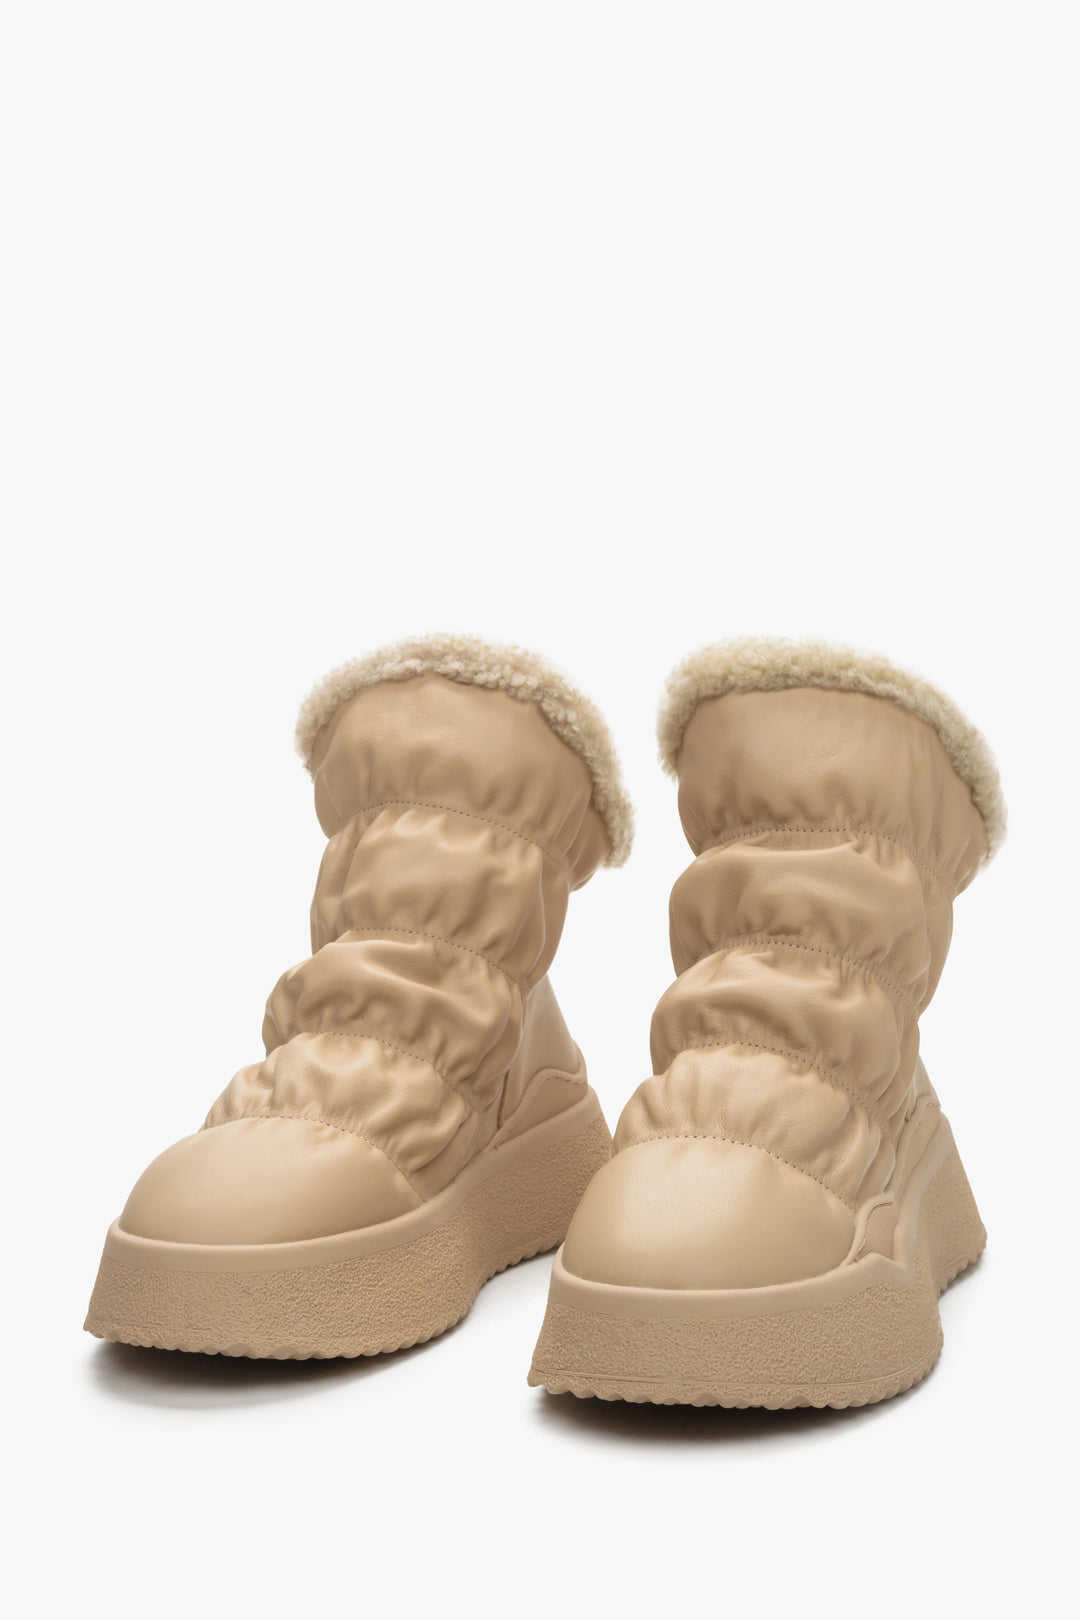 Women's beige snow boots Estro - a close-up on shoe toeline.